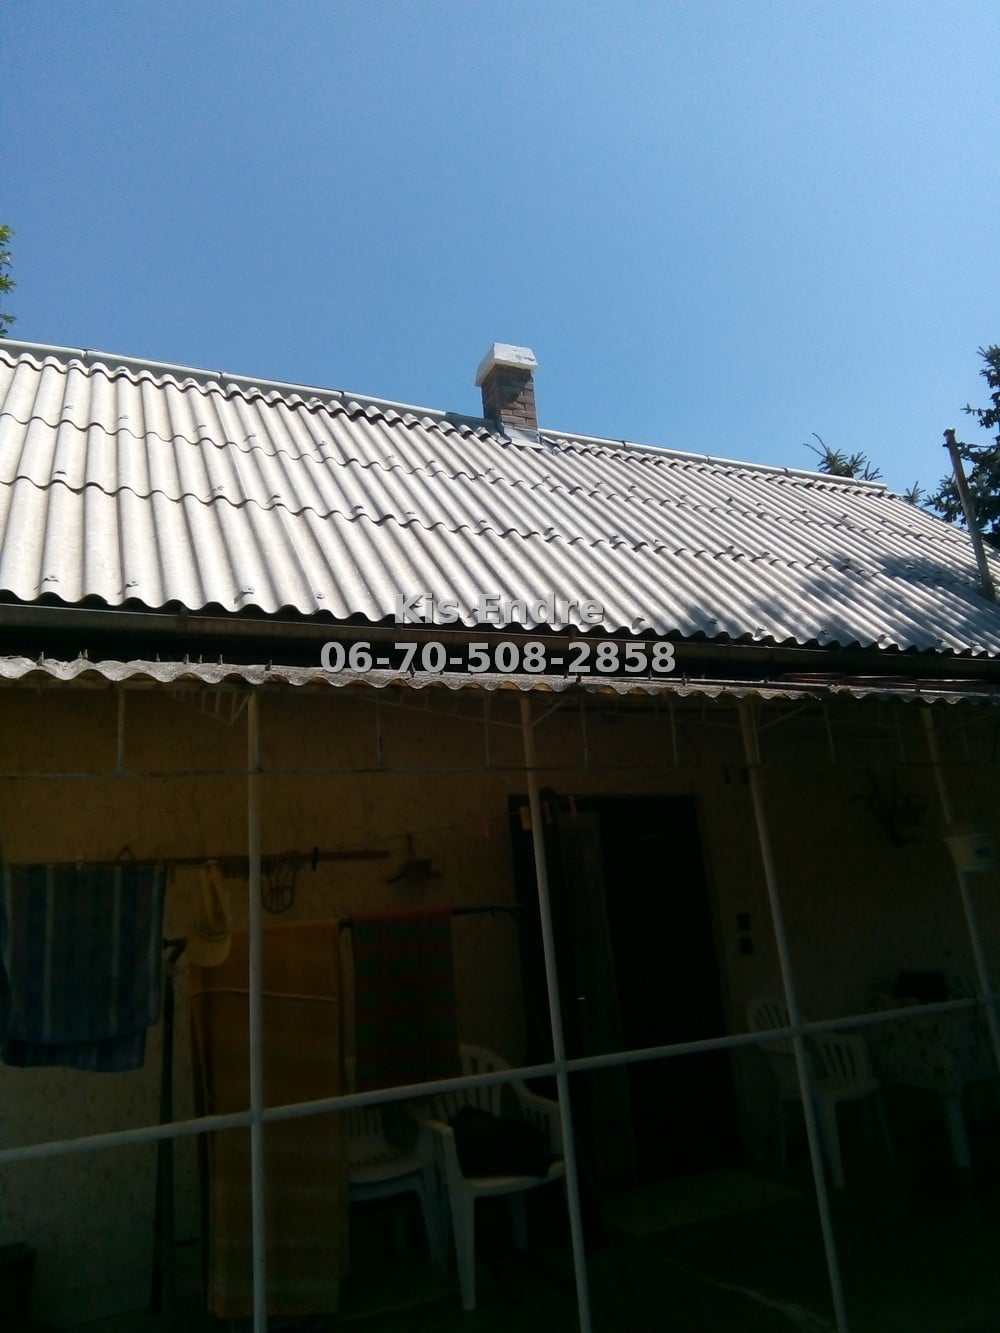 Hullámpala tető javítása, hullámpala tető felújítása, hullámpala tető festése 4 rétegben